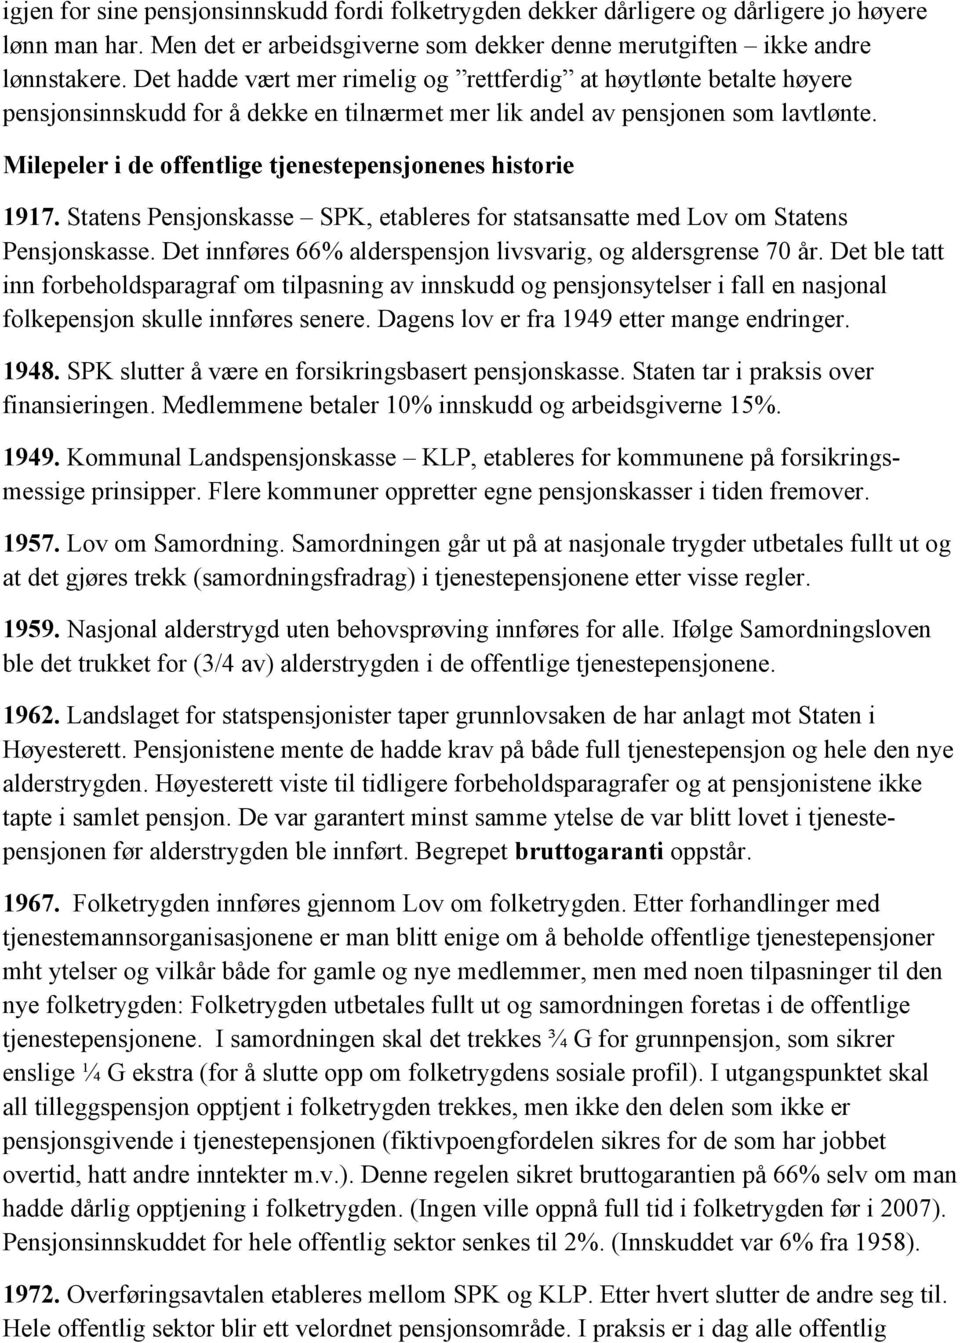 Milepeler i de offentlige tjenestepensjonenes historie 1917. Statens Pensjonskasse SPK, etableres for statsansatte med Lov om Statens Pensjonskasse.